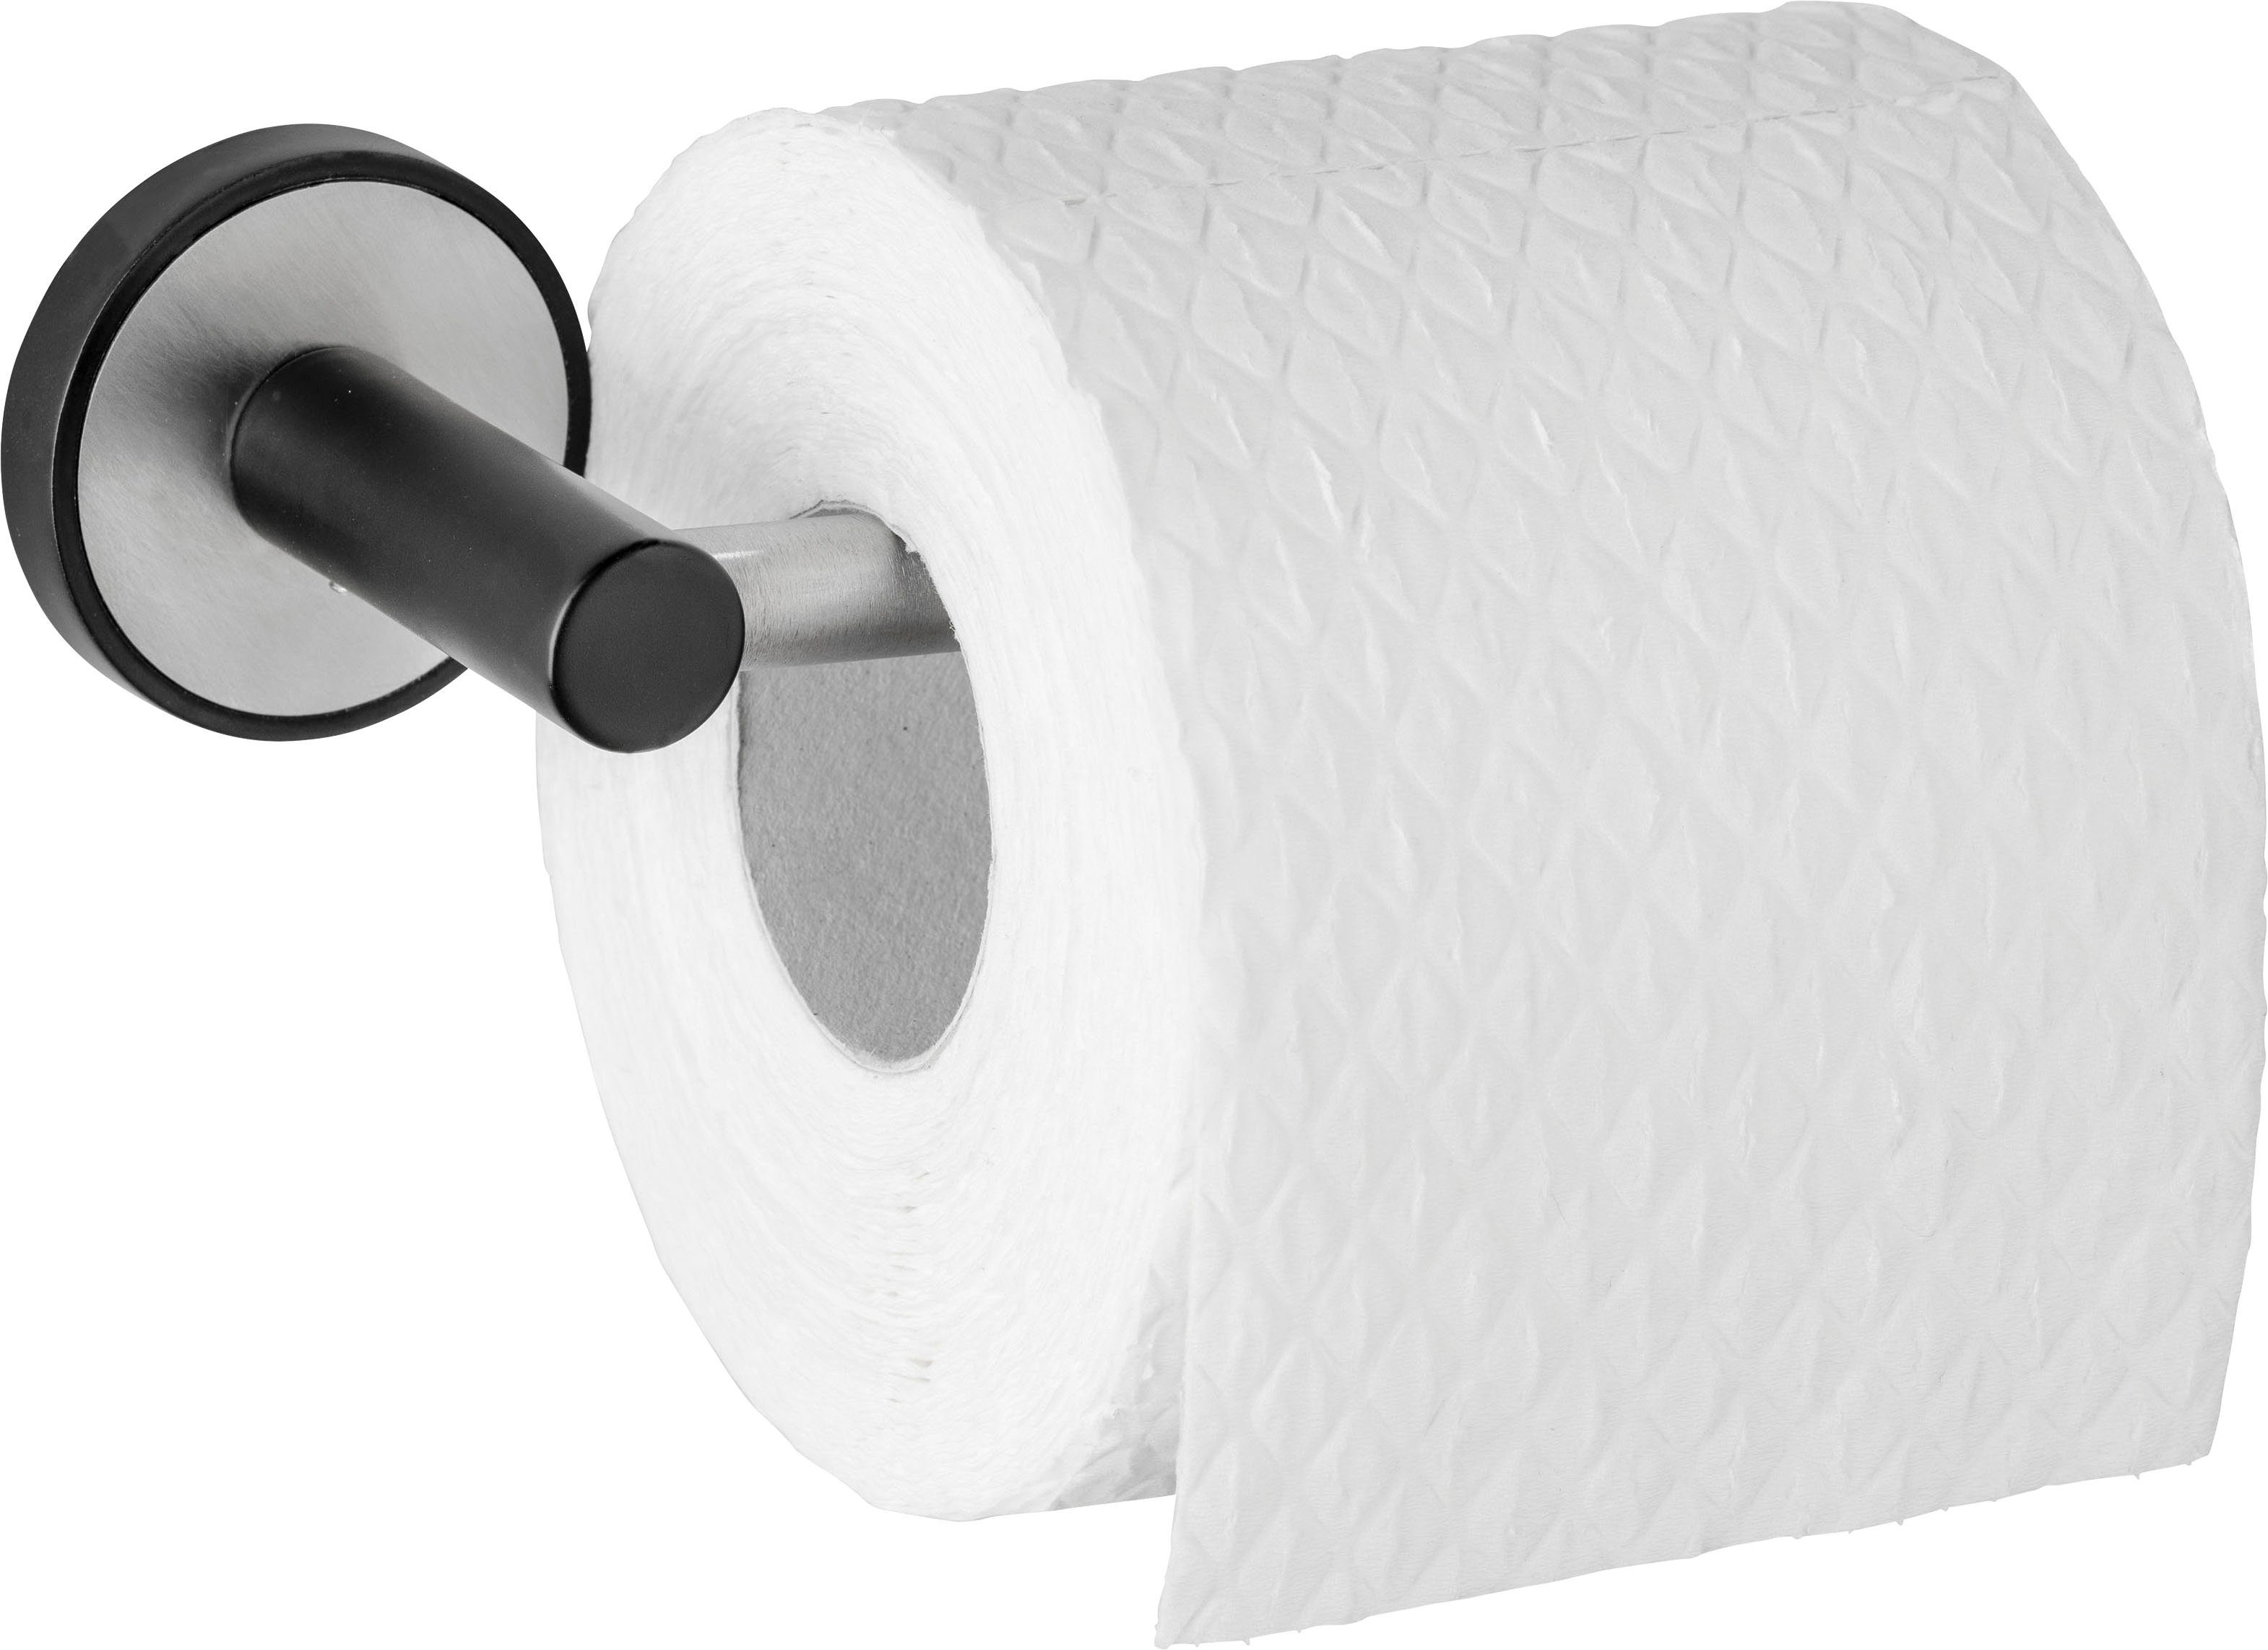 WENKO Toilettenpapierhalter ohne UV-Loc® Udine, Befestigen Bohren